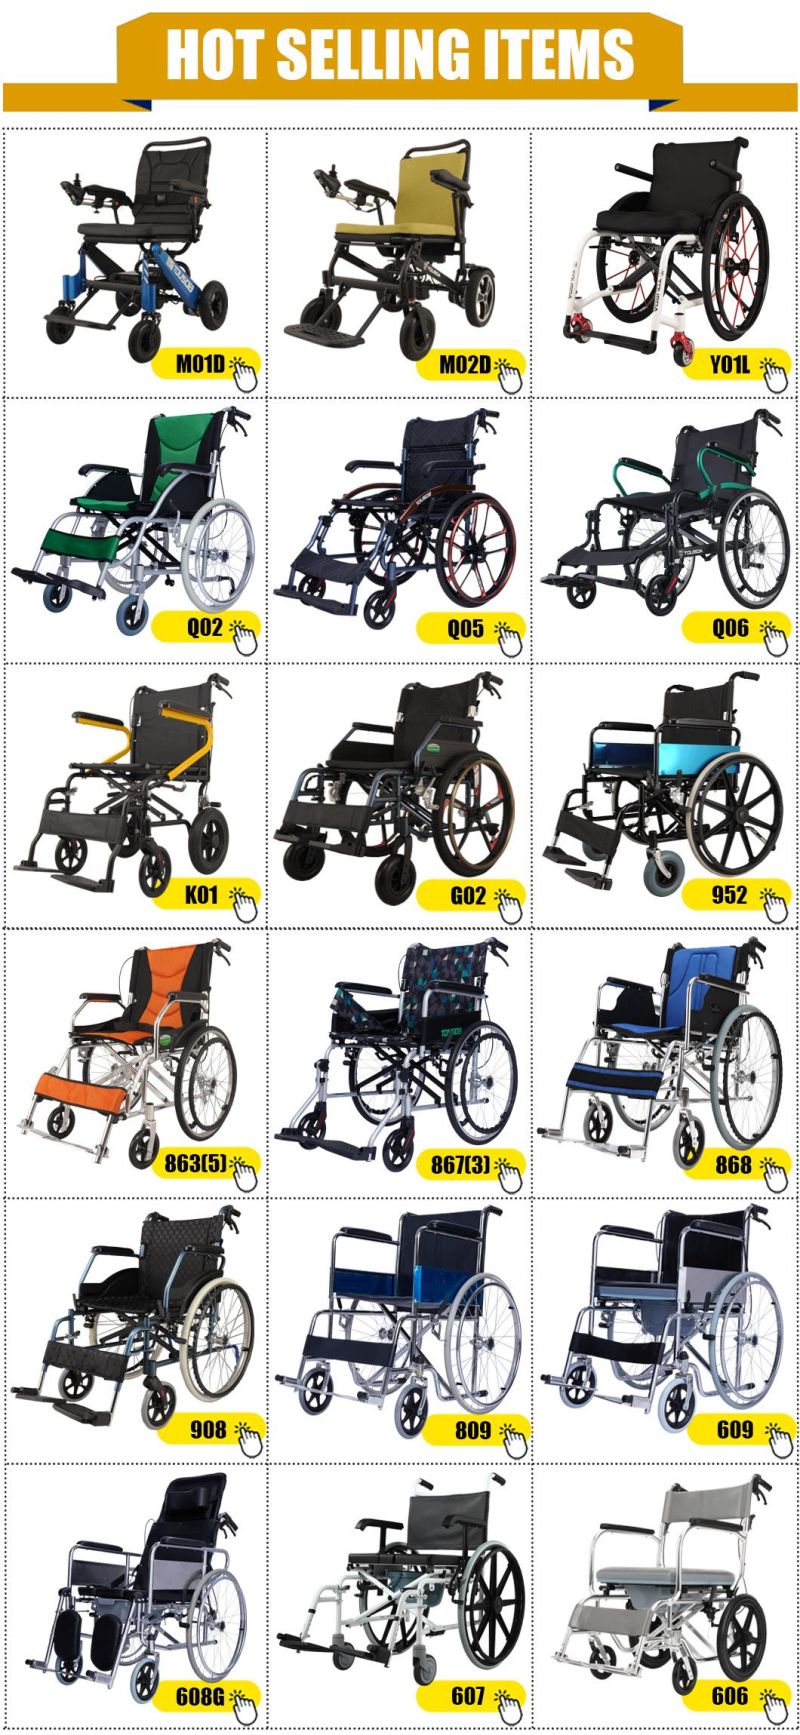 Portable Alloy Manual Folding Wheelchair